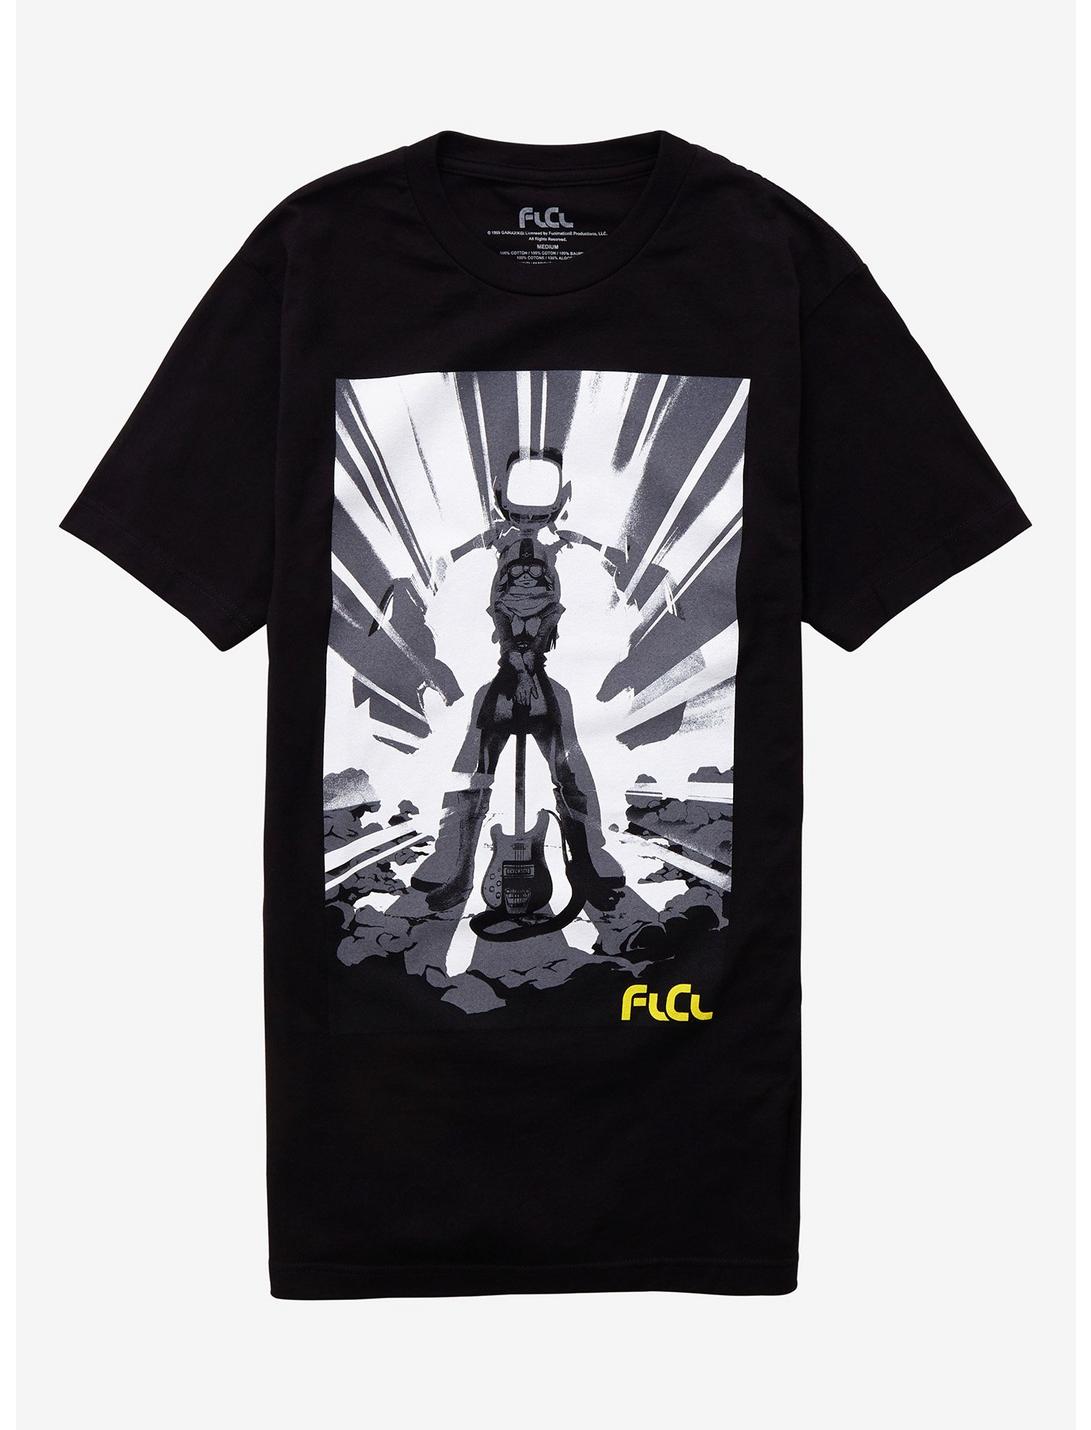 FLCL Haruko Canti T-Shirt, BLACK, hi-res